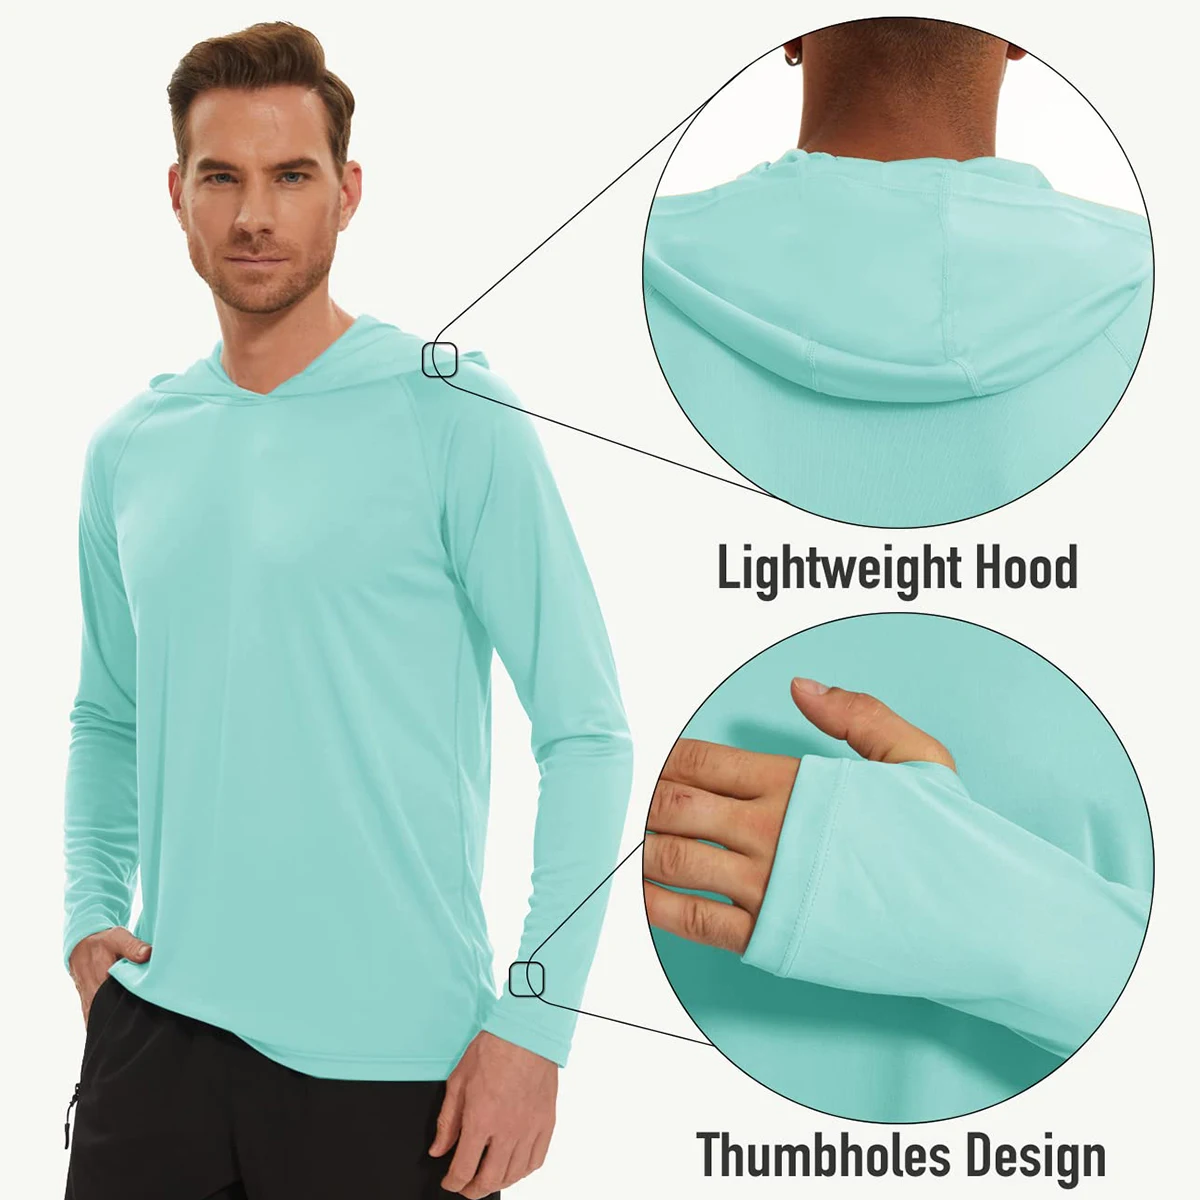 MAGCOMSEN Men's Hooded UV Sun Protection T-Shirt UPF 50+ Long